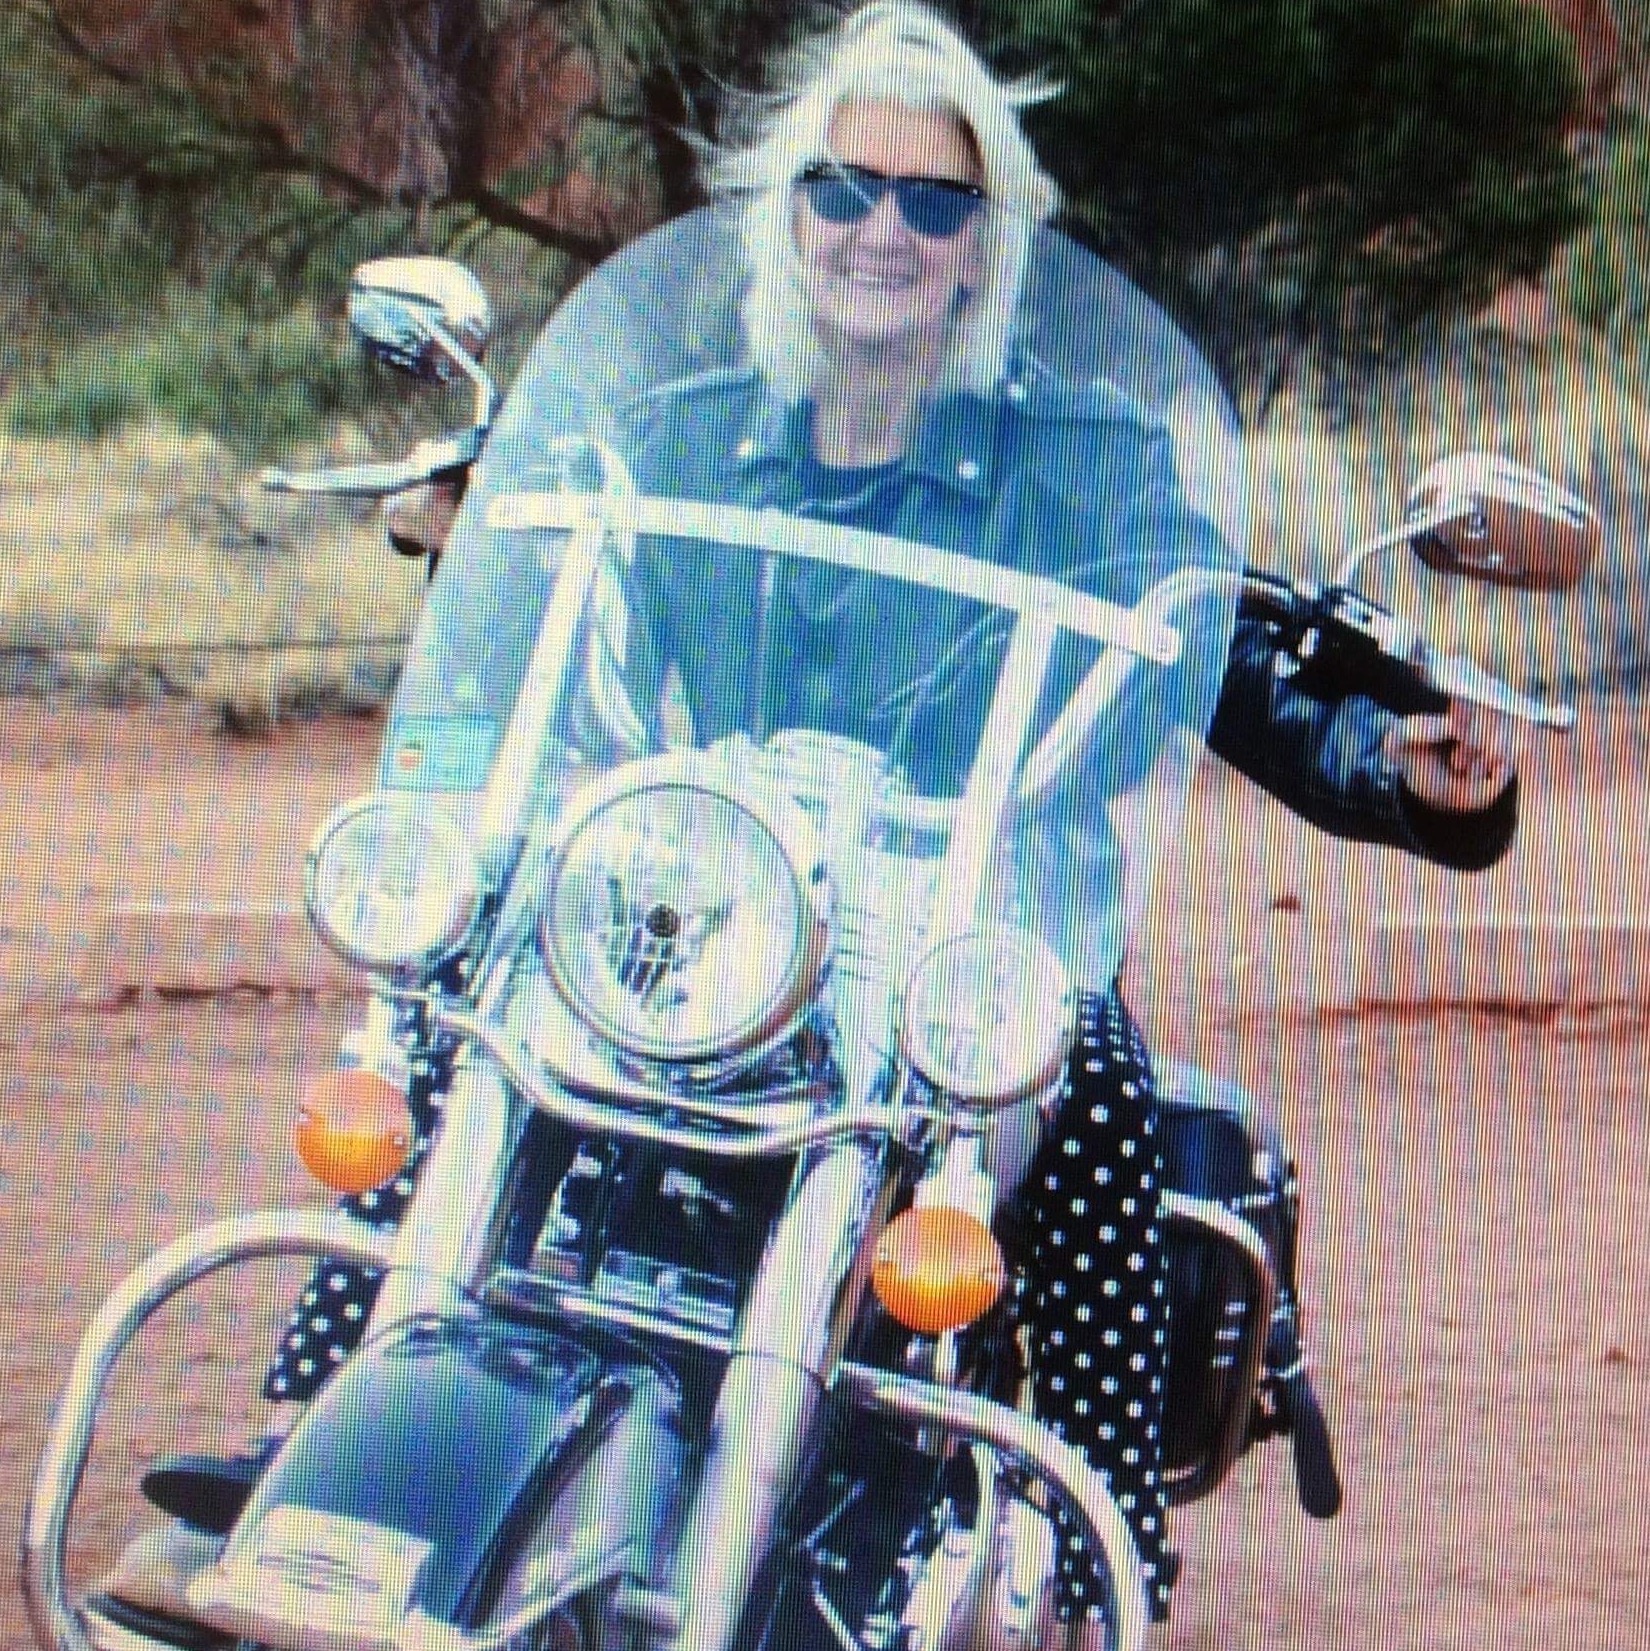 Diane posing on a motorbike